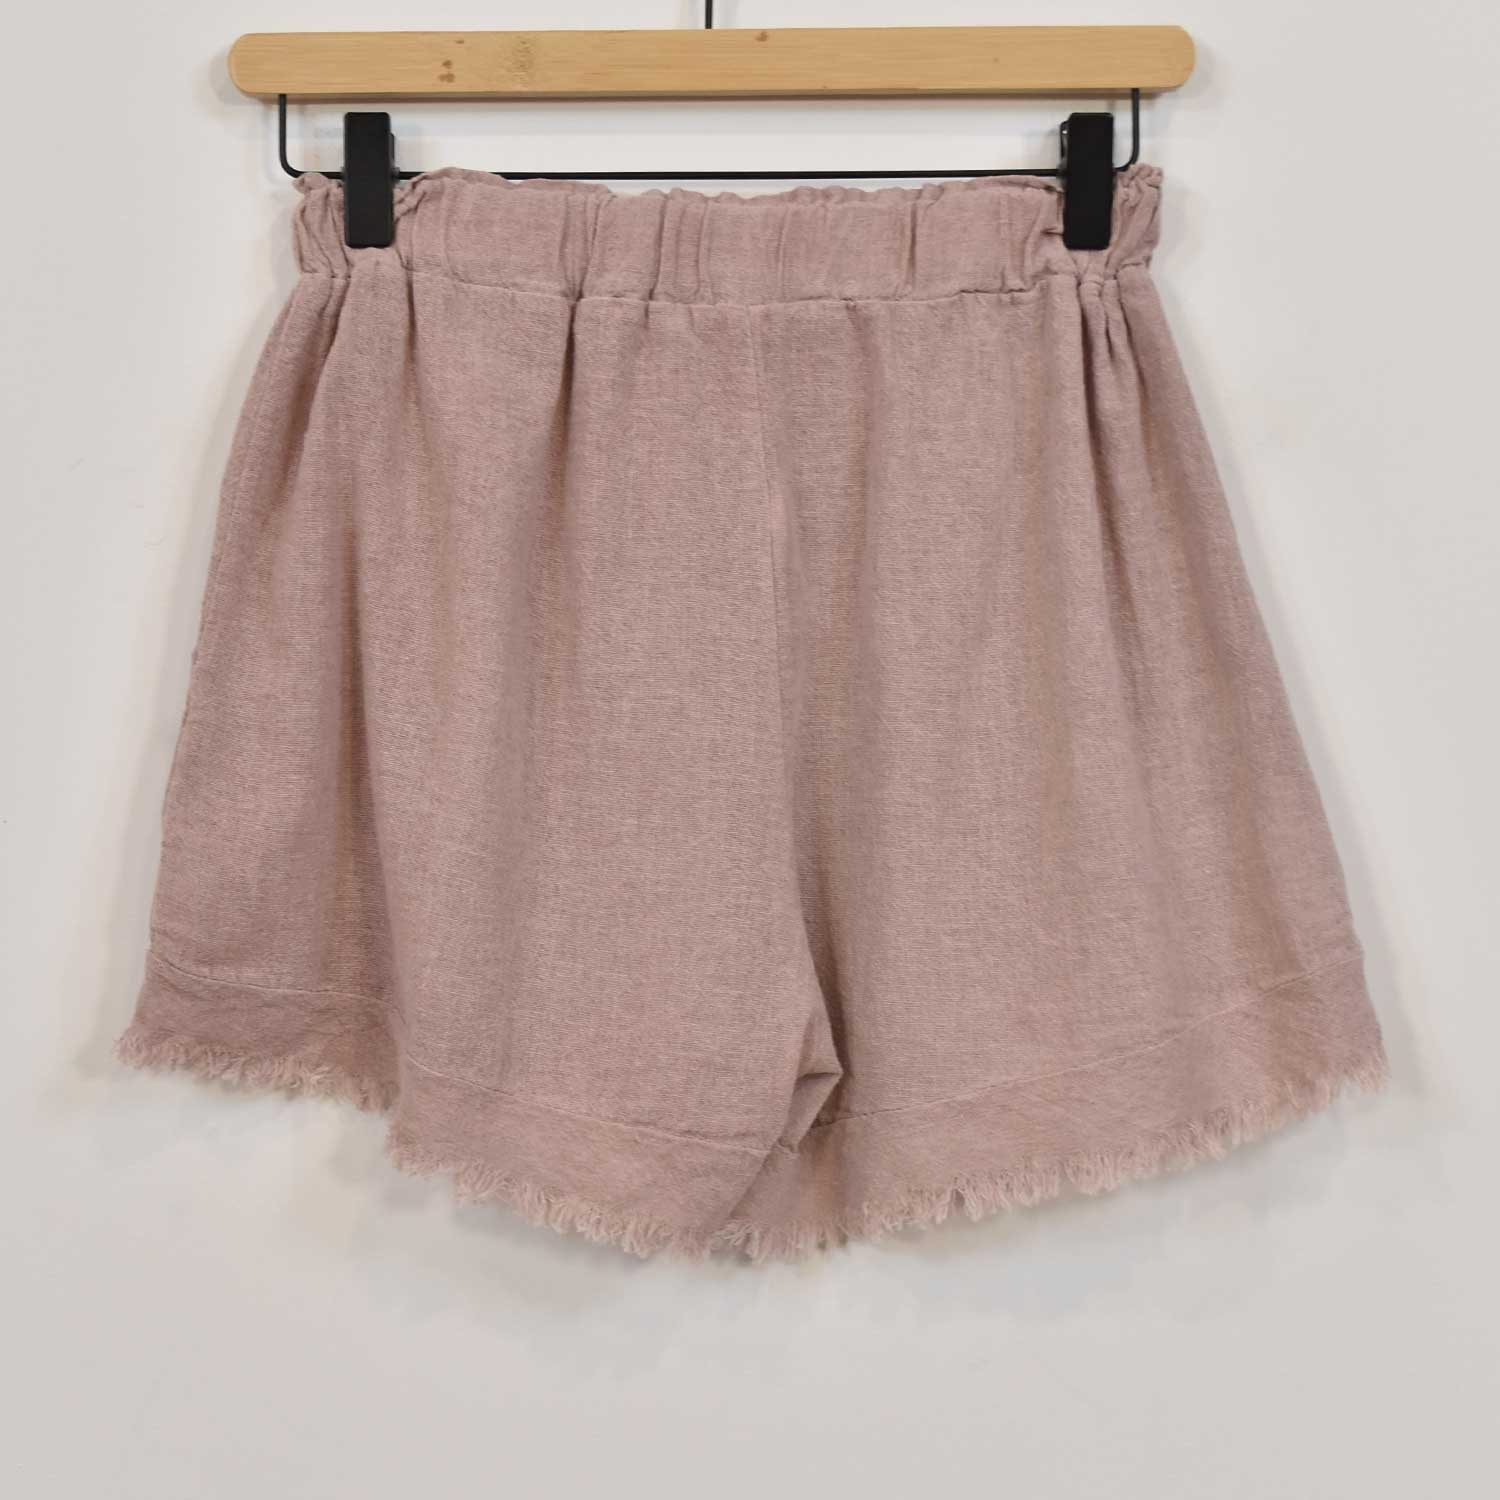 Pink frayed shorts